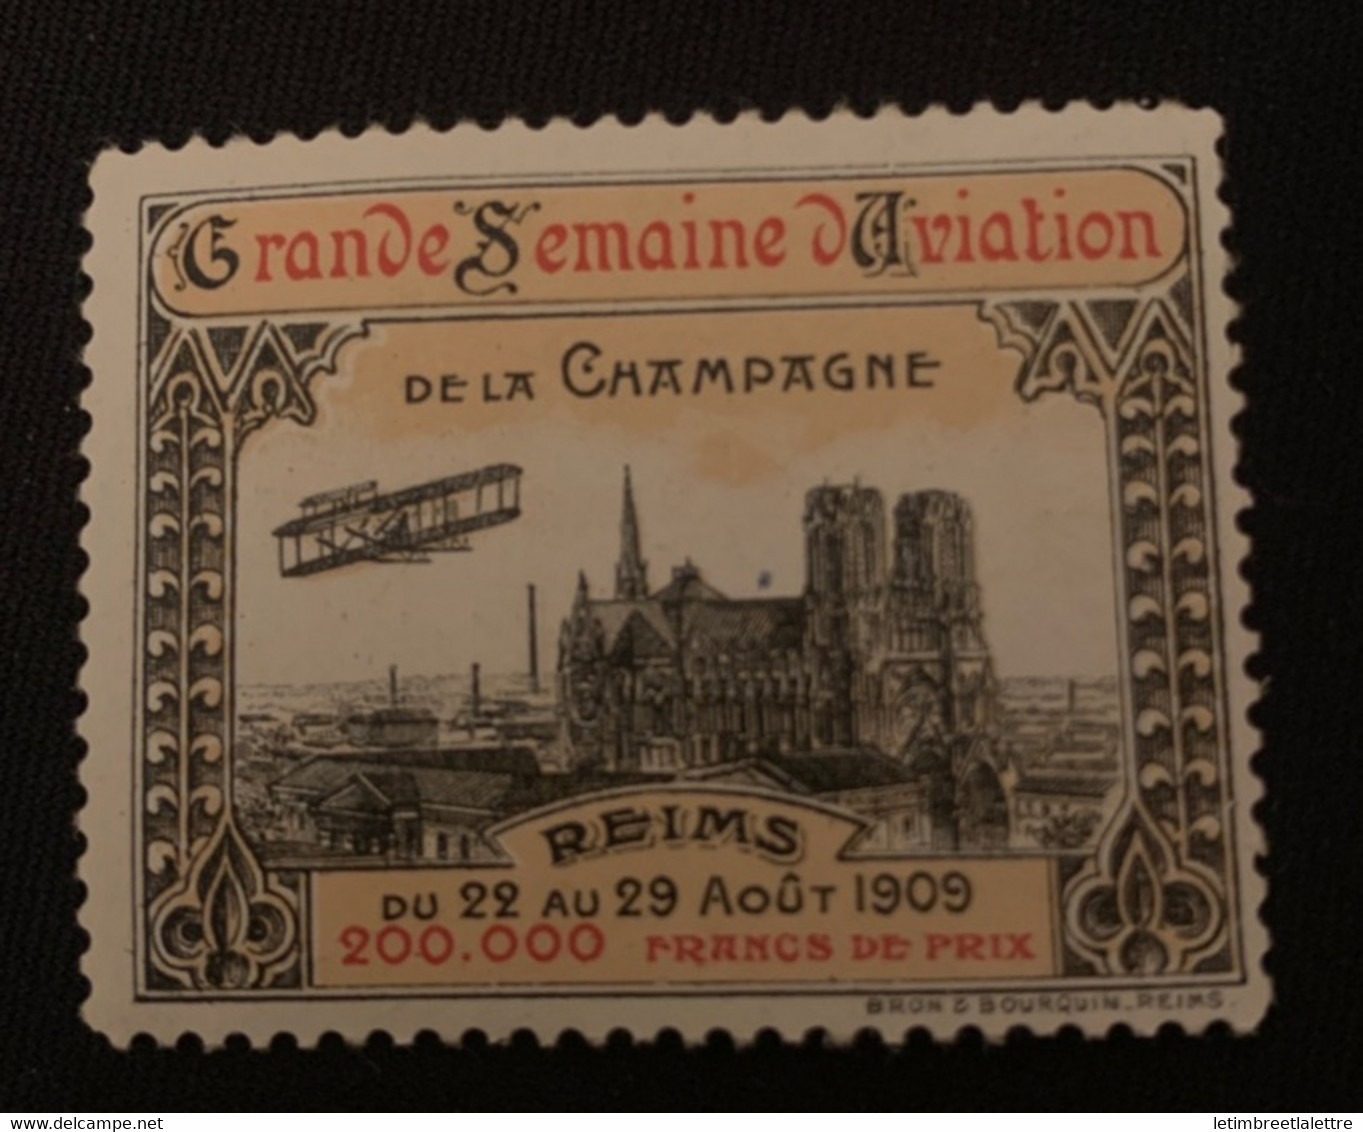 ⭐ France - Vignette - Grande Semaine D’aviation De La Campagne - Reims 1909 ⭐ - Luchtvaart